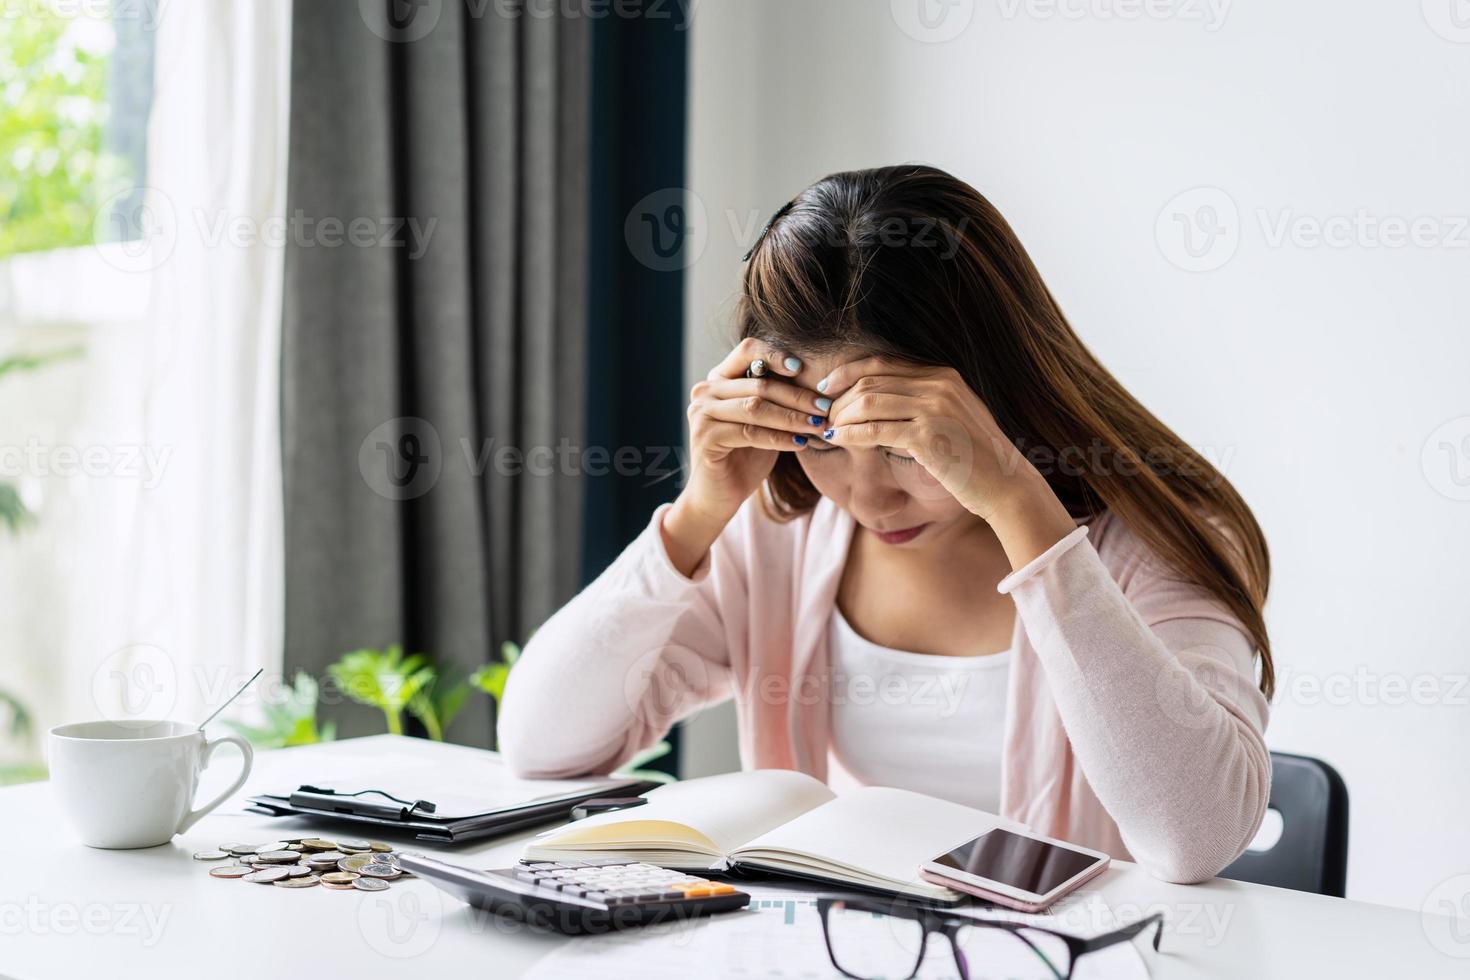 mujer joven estresada que calcula los gastos mensuales de la casa, los impuestos, el saldo de la cuenta bancaria y el pago de las facturas de las tarjetas de crédito, los ingresos no son suficientes para los gastos. foto